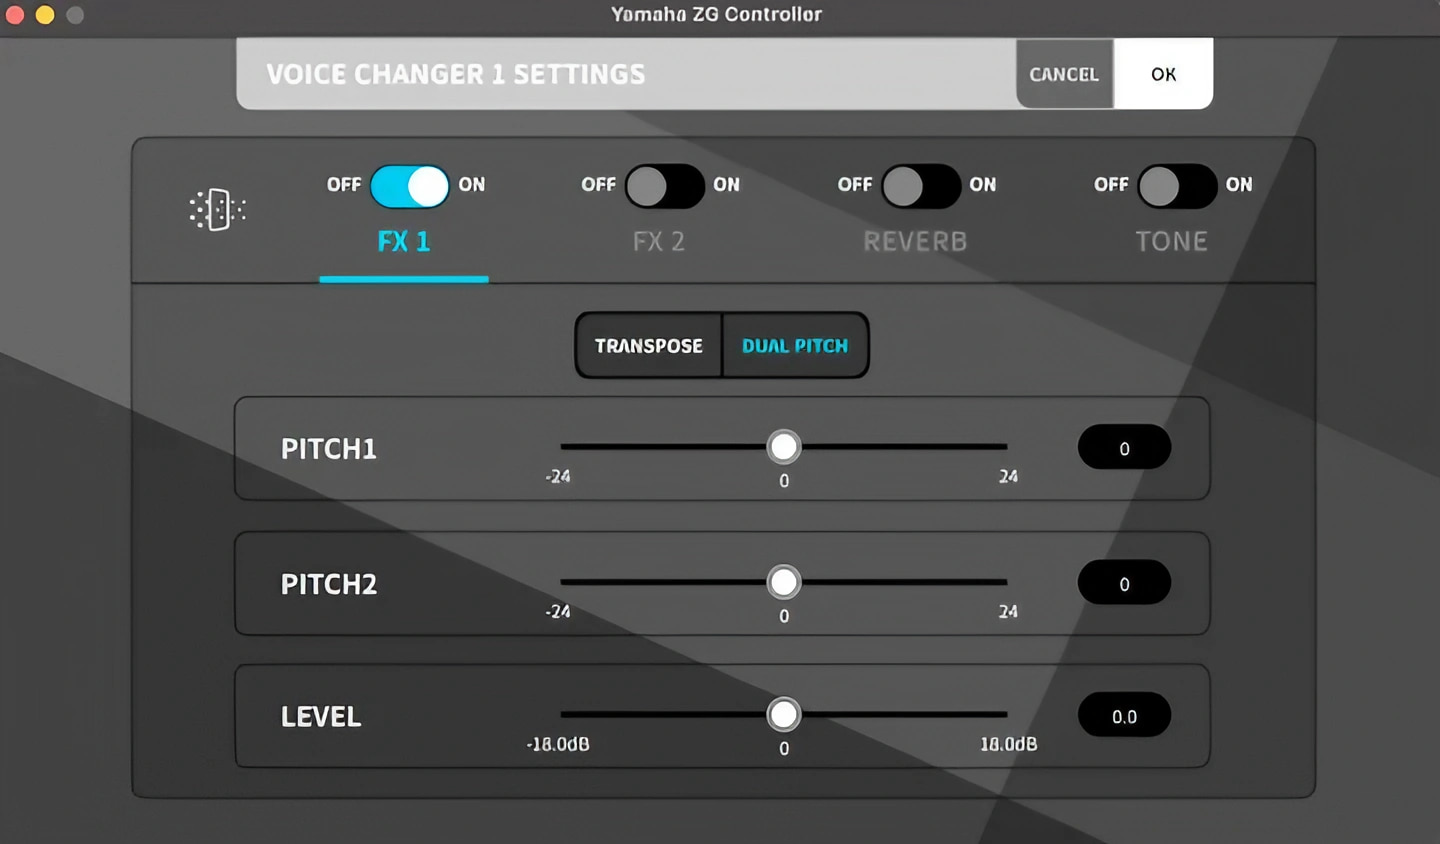 在 Voice Changer 1 能進一改變麥克風輸入音訊的高低音表現和音質。